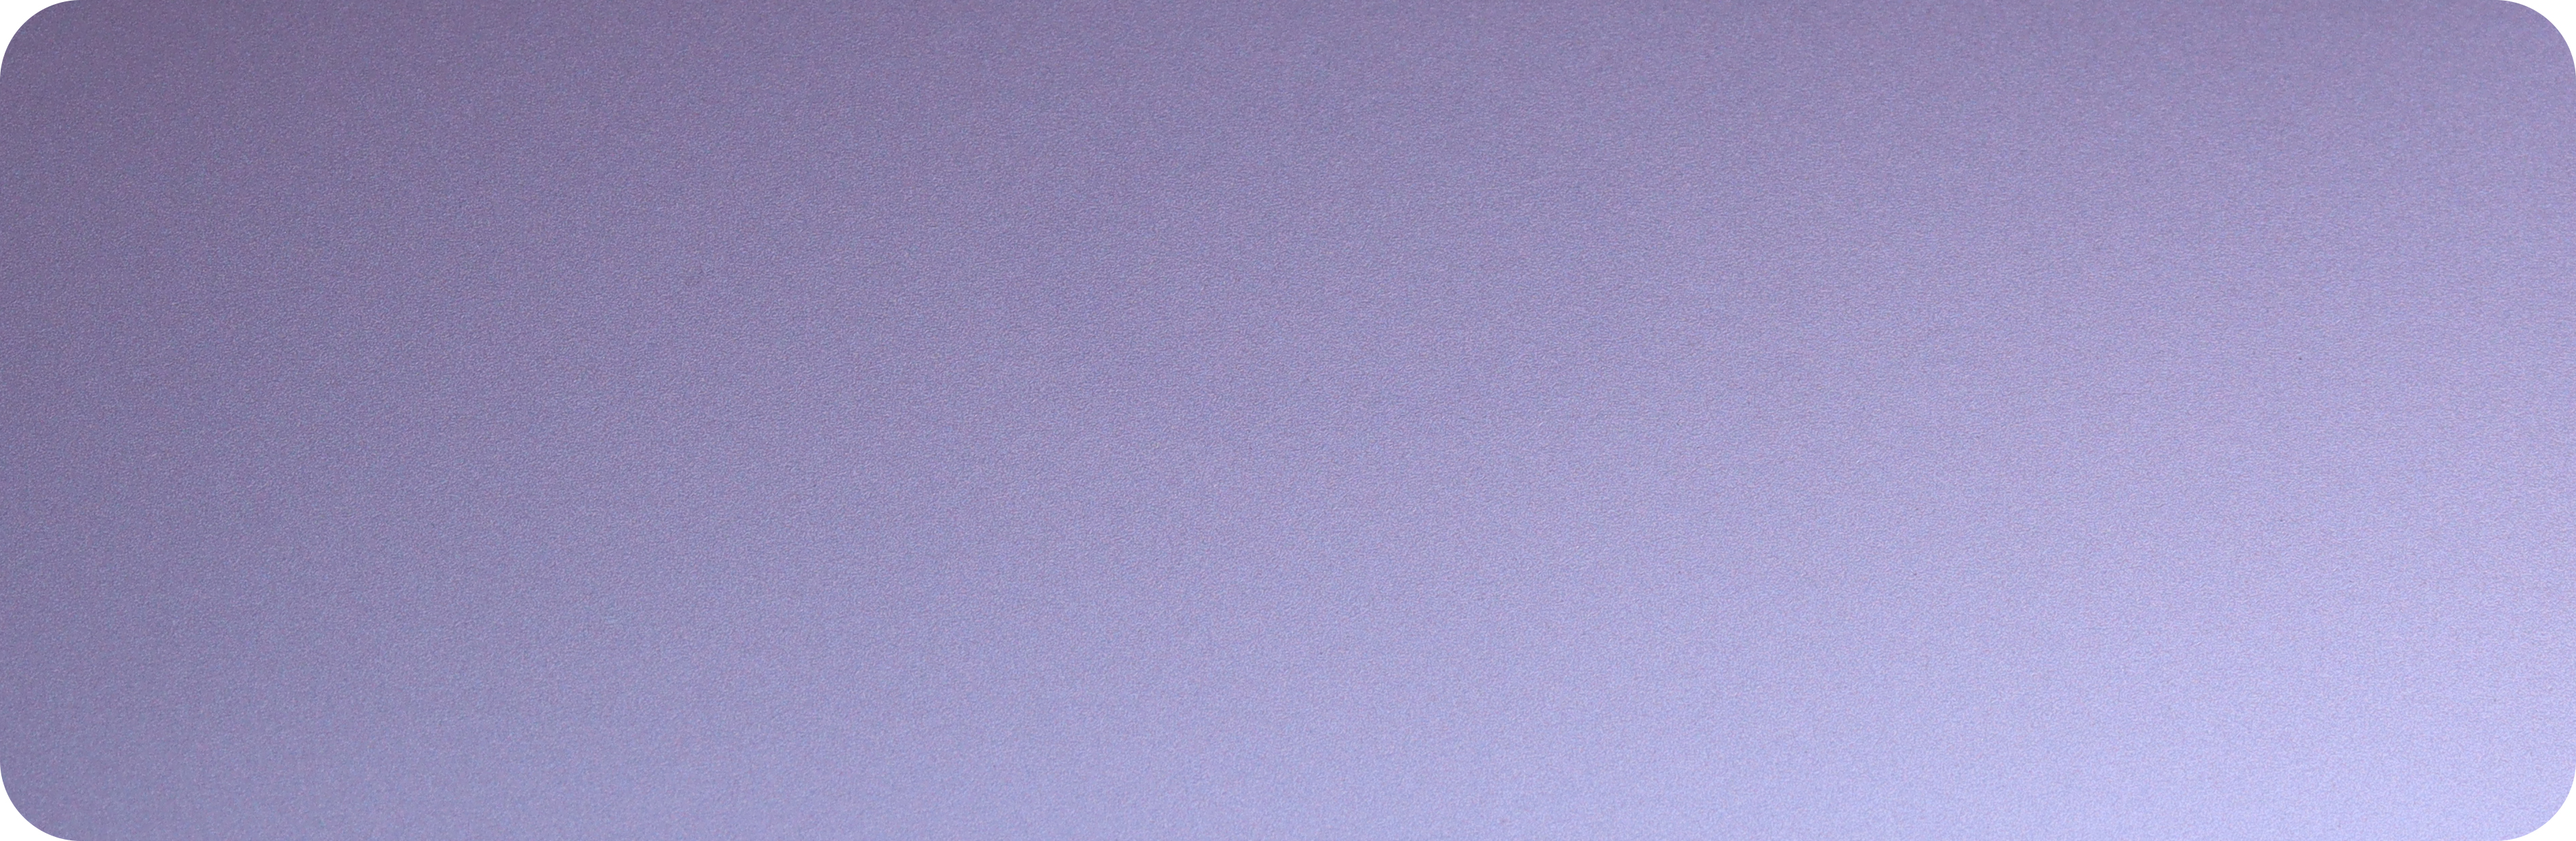 9.TPU星黛紫-TPU-xingdai violet